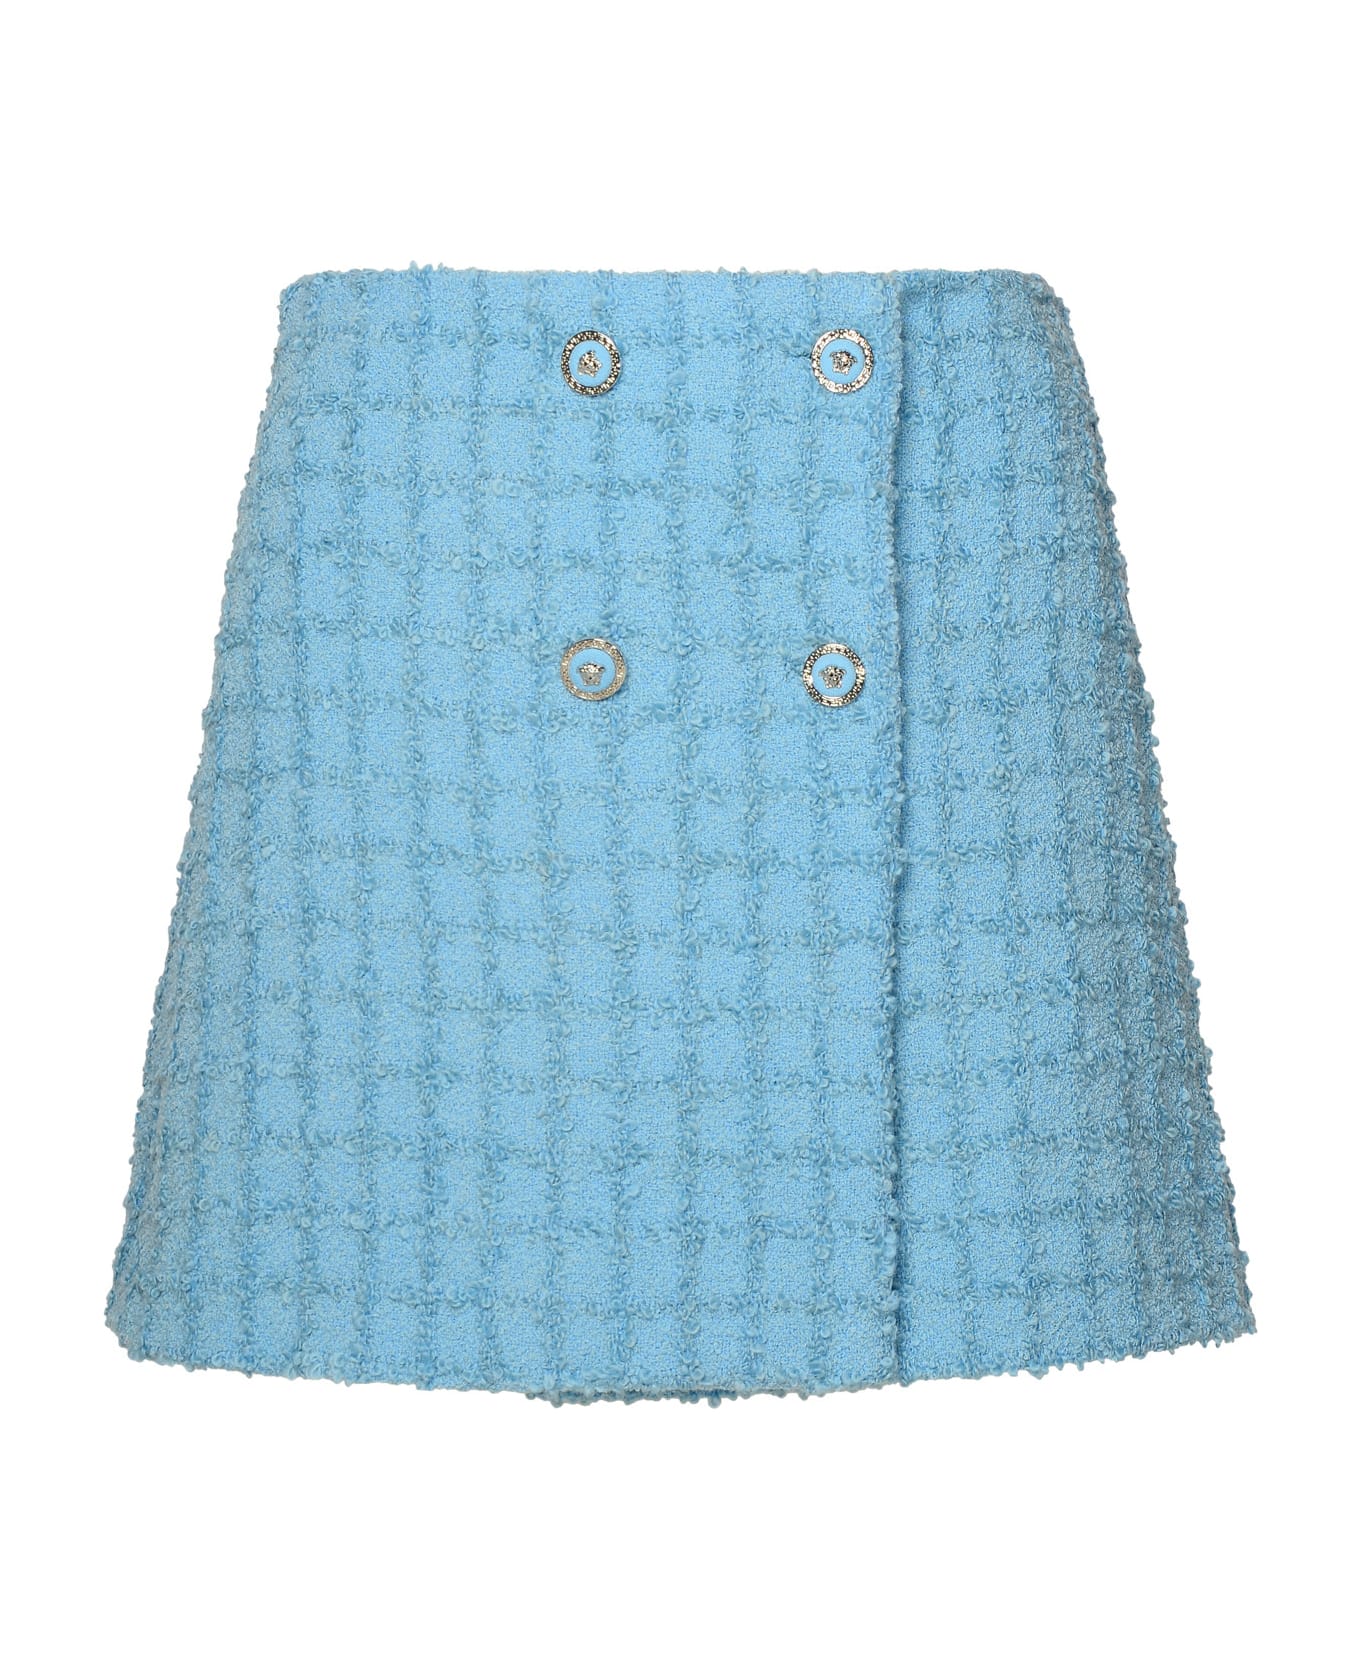 Versace Skirt In Light Blue Virgin Wool Blend - Light Blue スカート